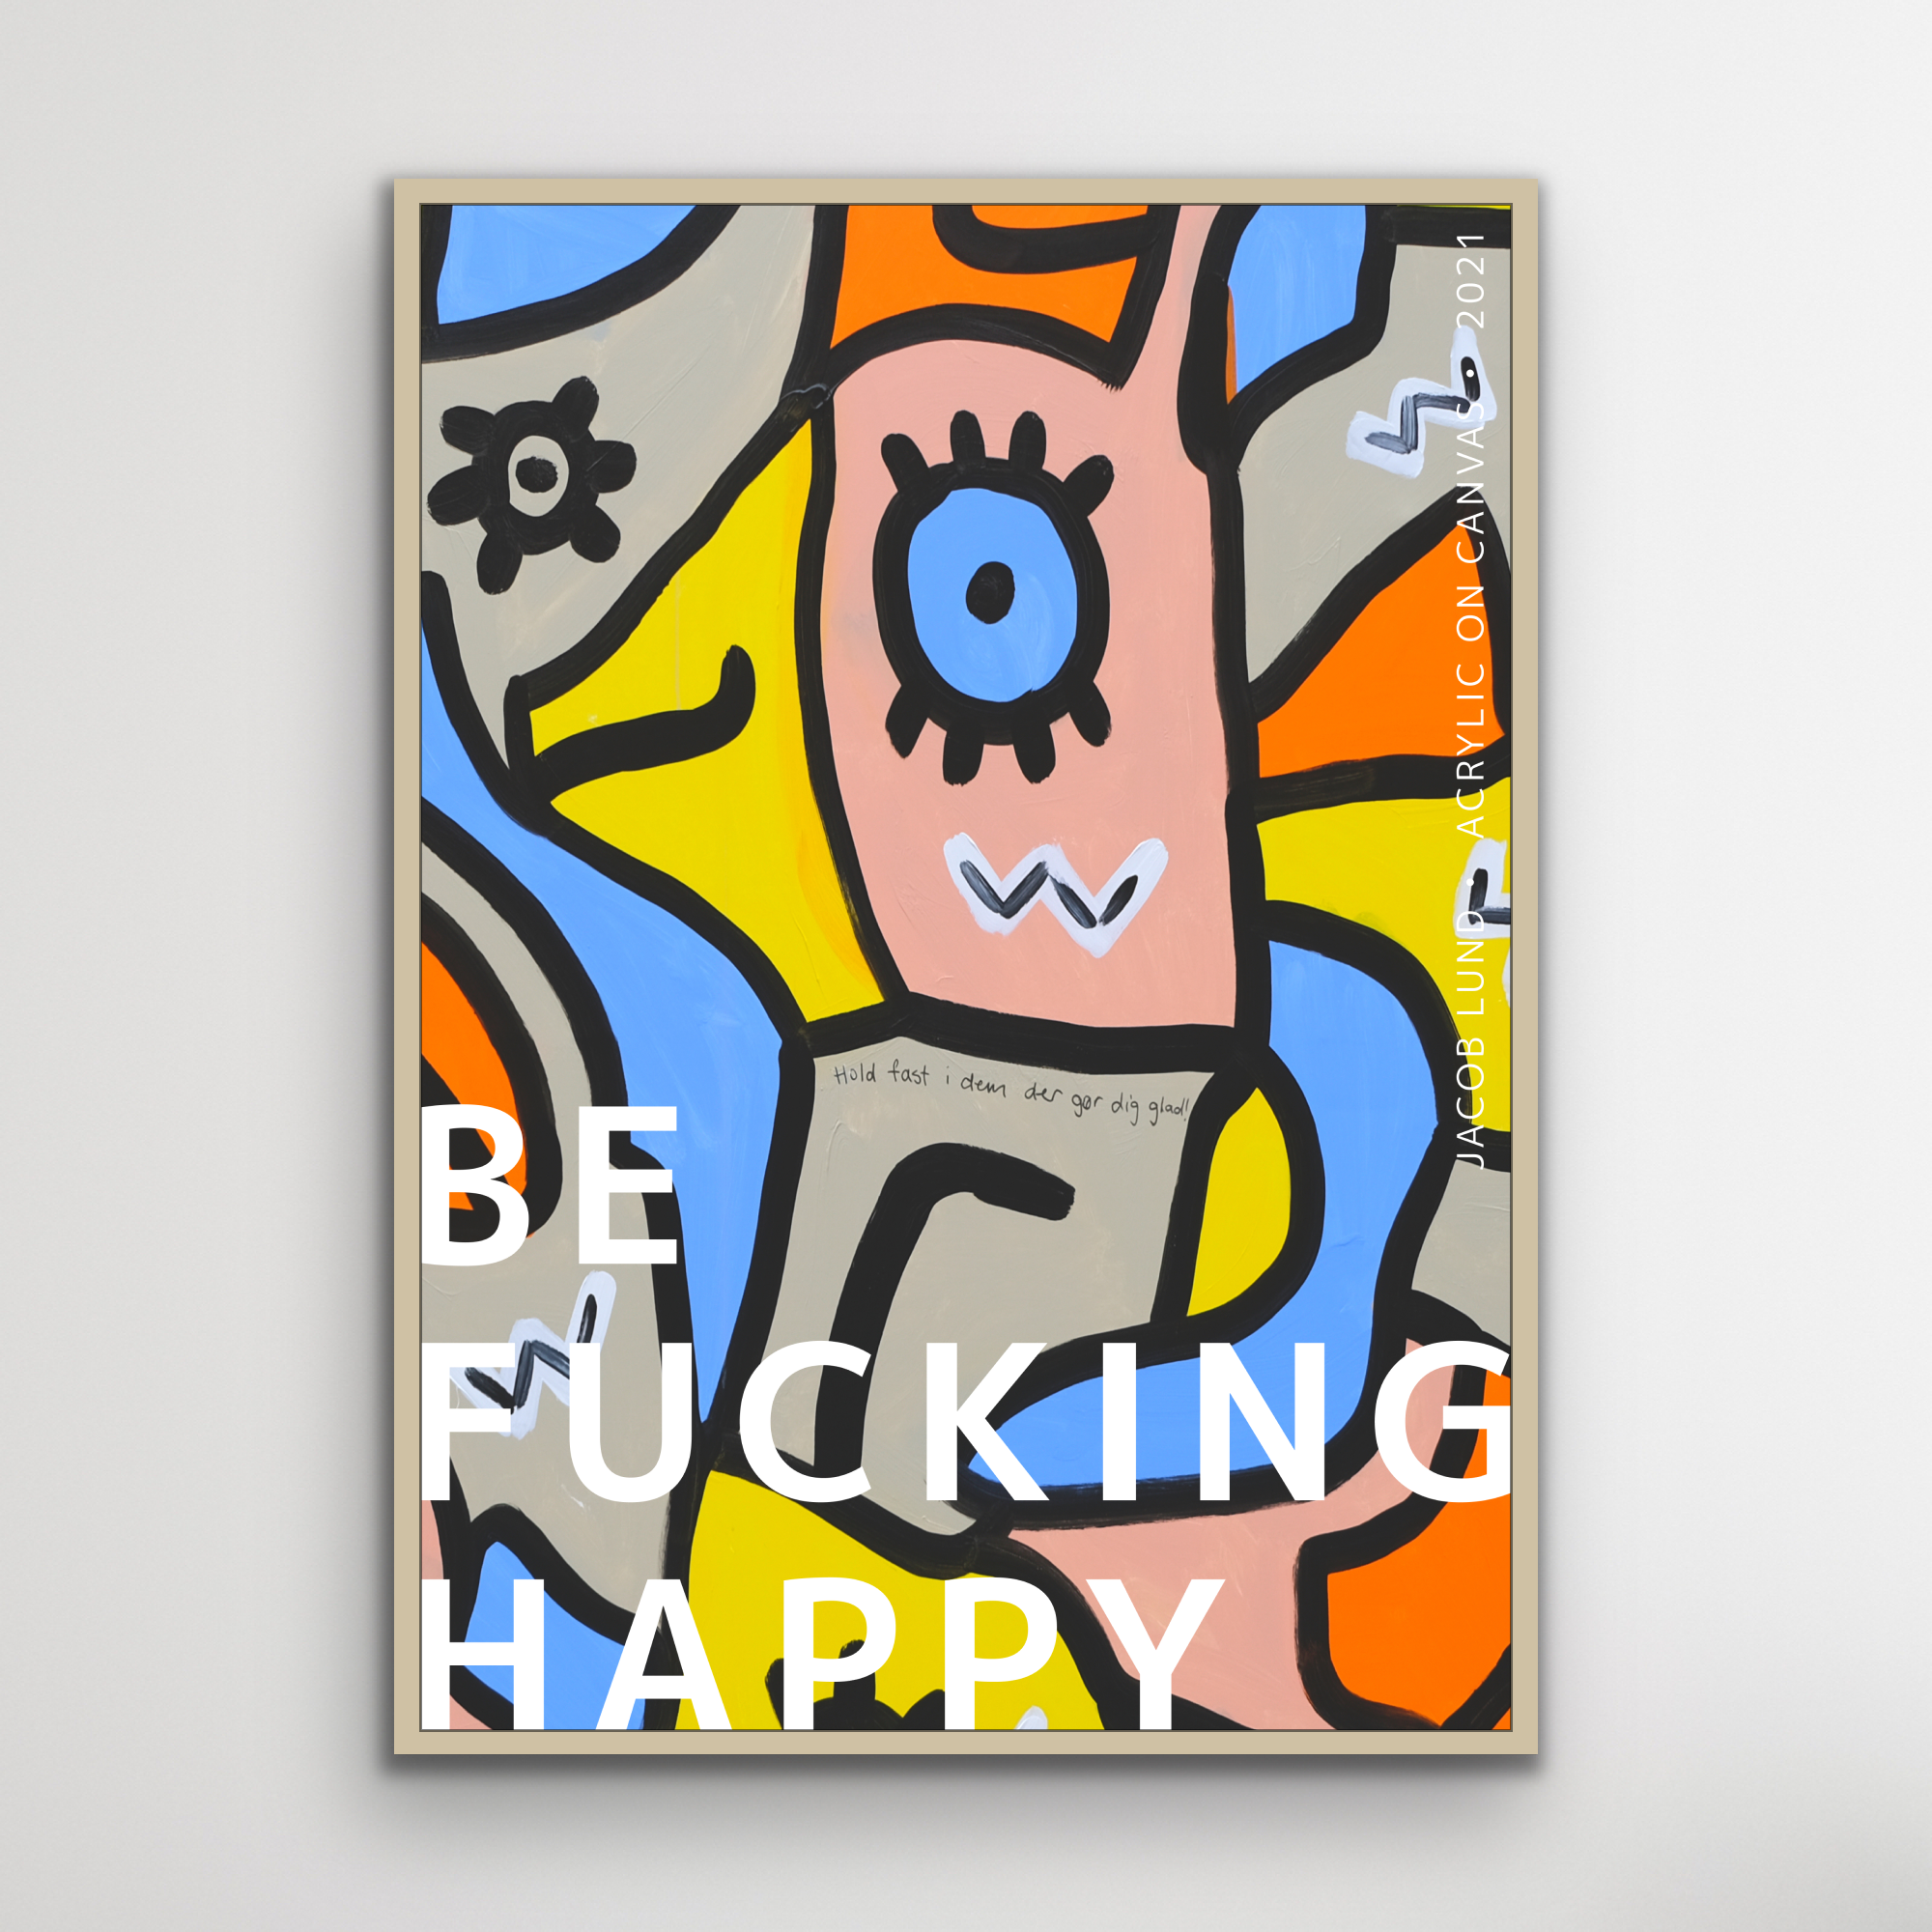 Plakat: "Be F** Happy"